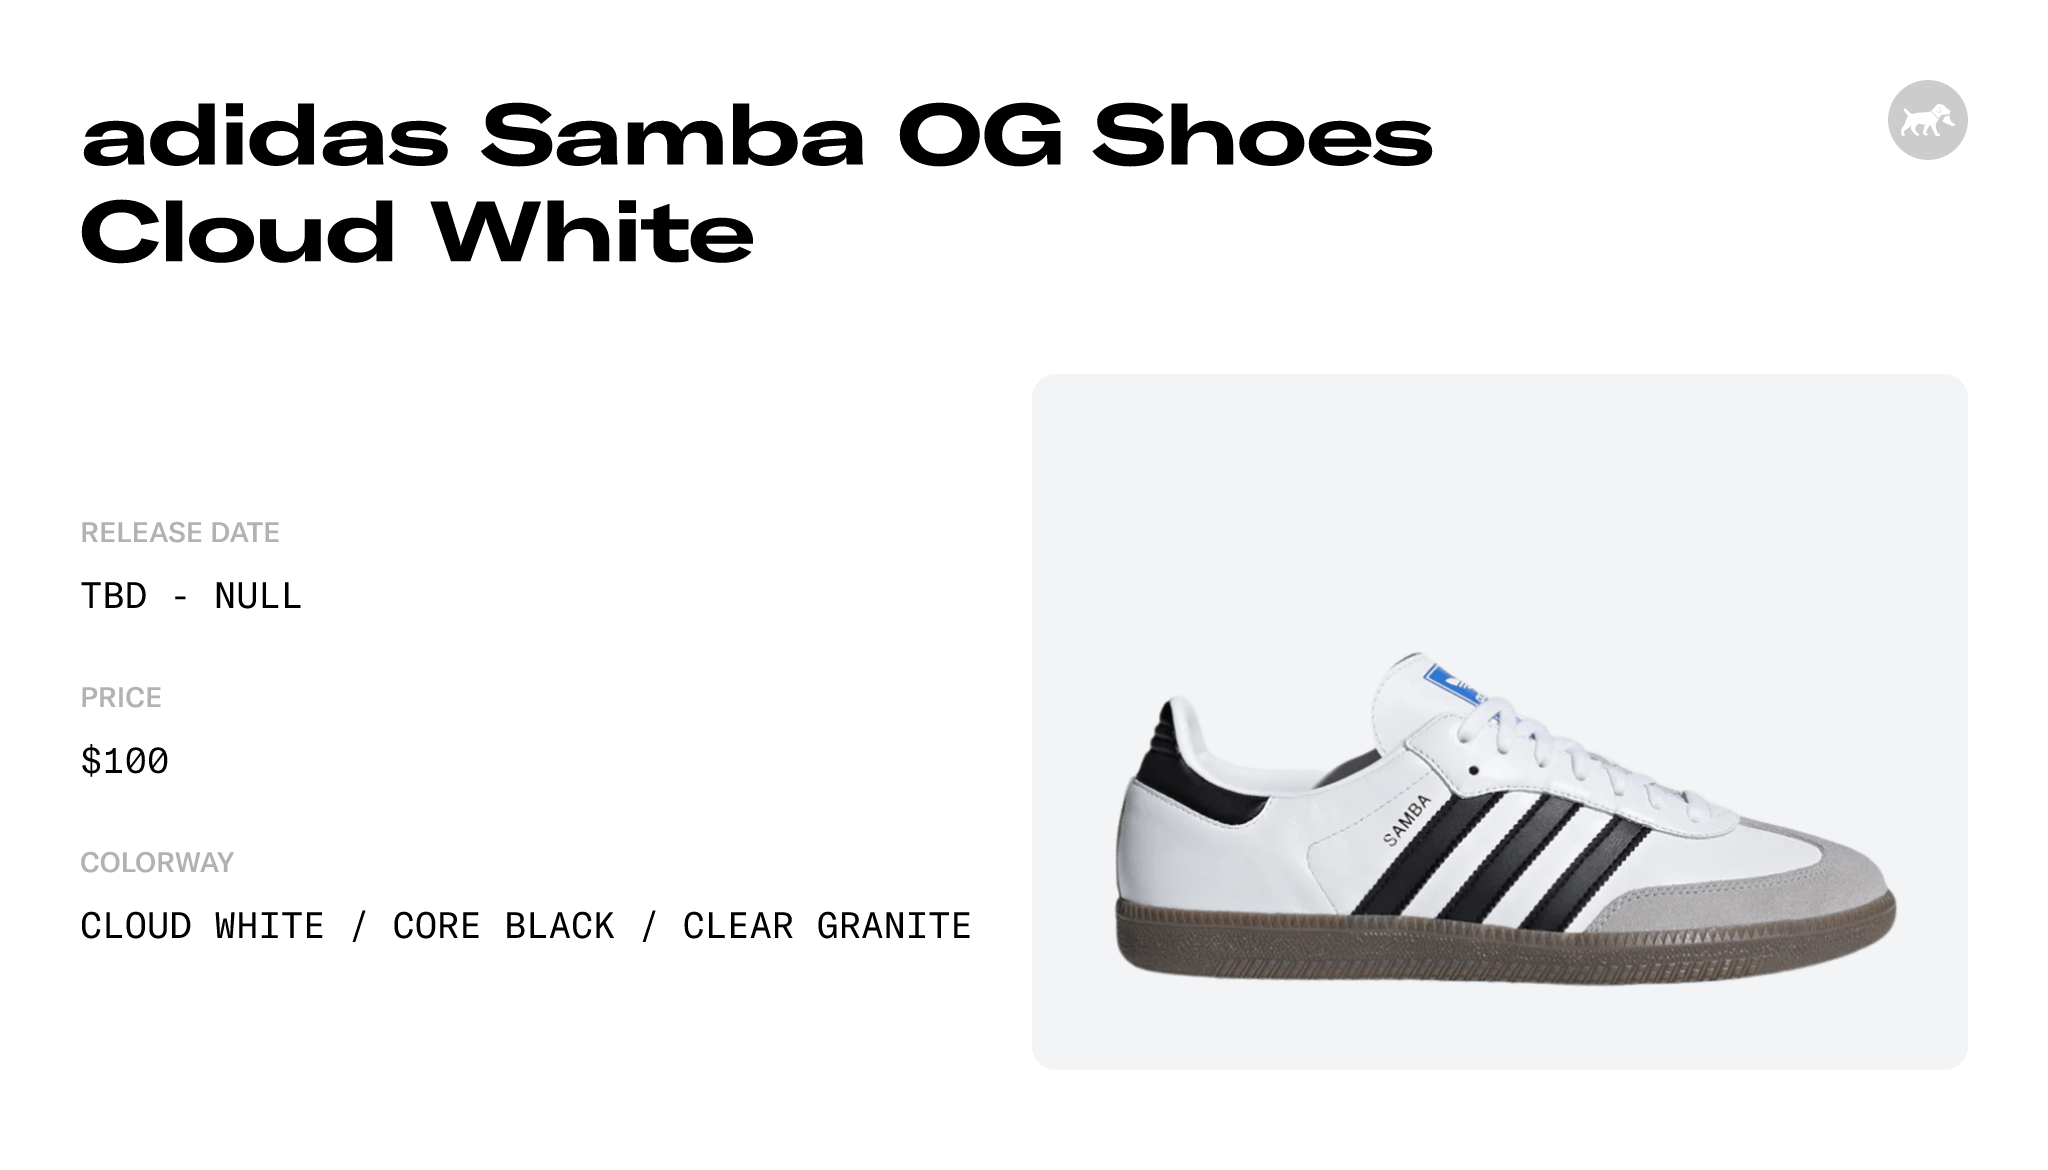 Adidas Samba OG Cloud White Core Black